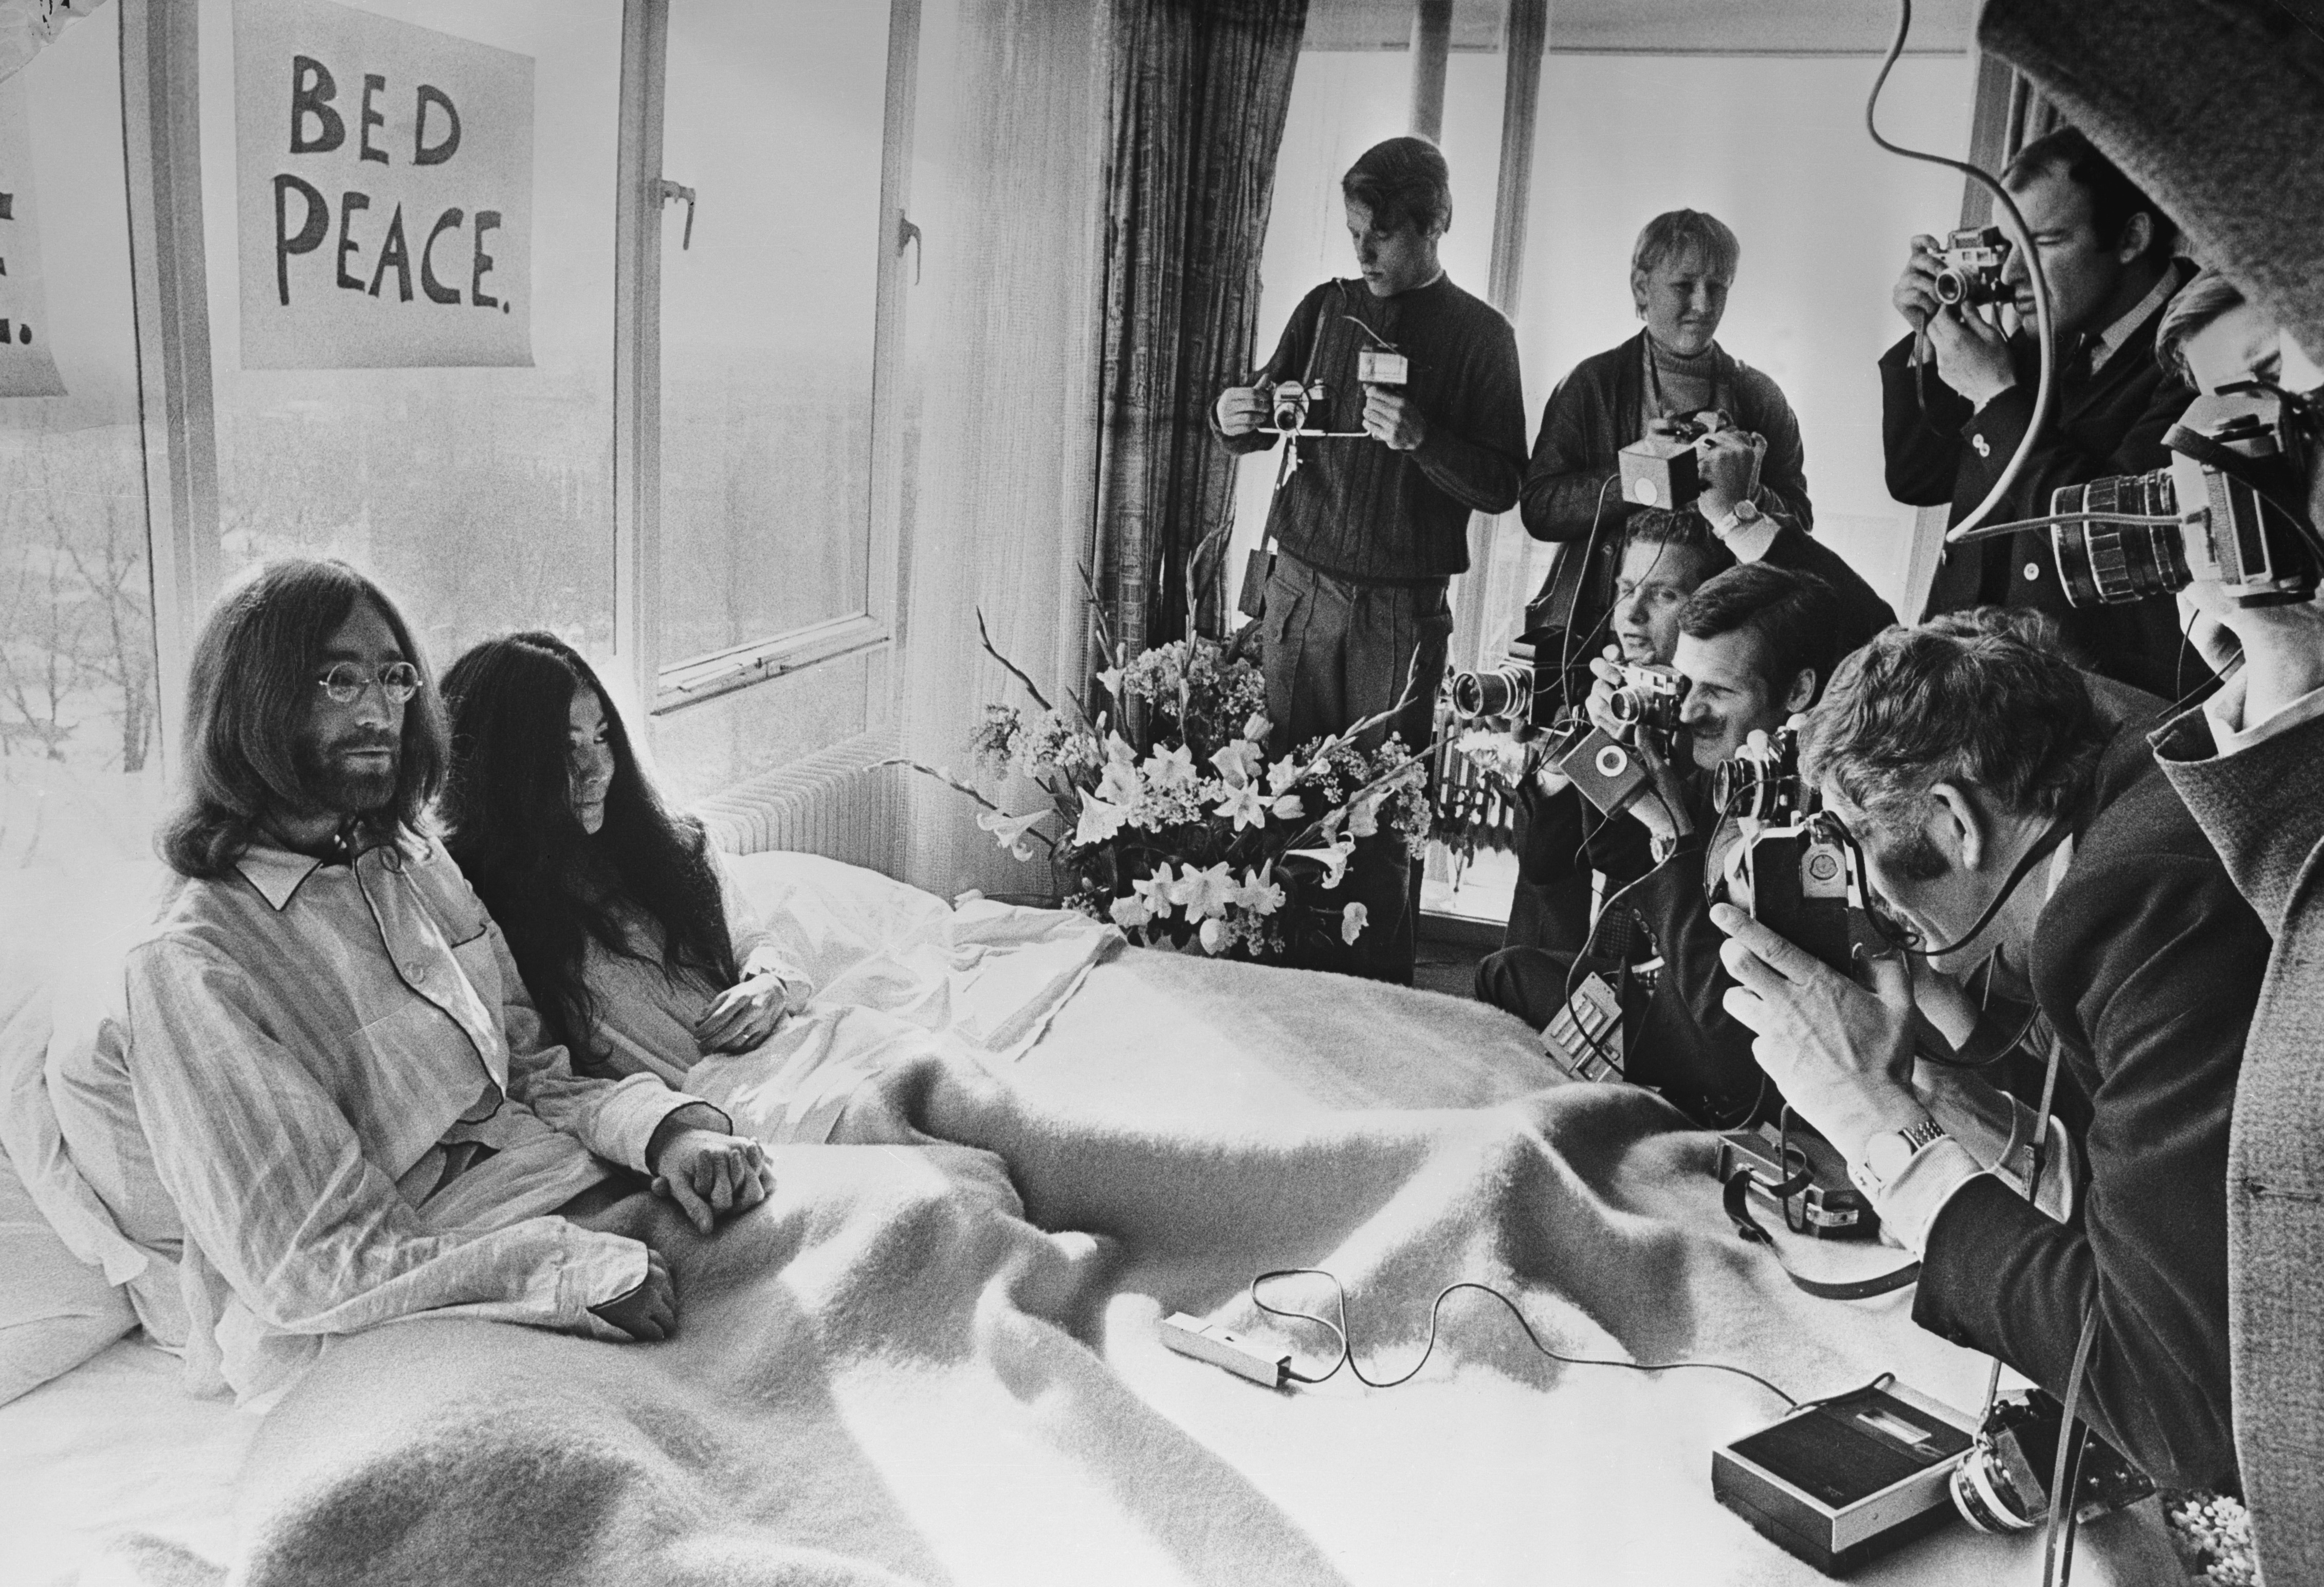 25 marzo 1969. John Lennon e Yoko Ono ricevono la stampa sul letto della loro suite presso l'Hilton di Amsterdam. La coppia inaugurò così il "bed in", una forma di protesta non-violenta contro la guerra in Vietnam che sarebbe durata fino al 31 marzo 